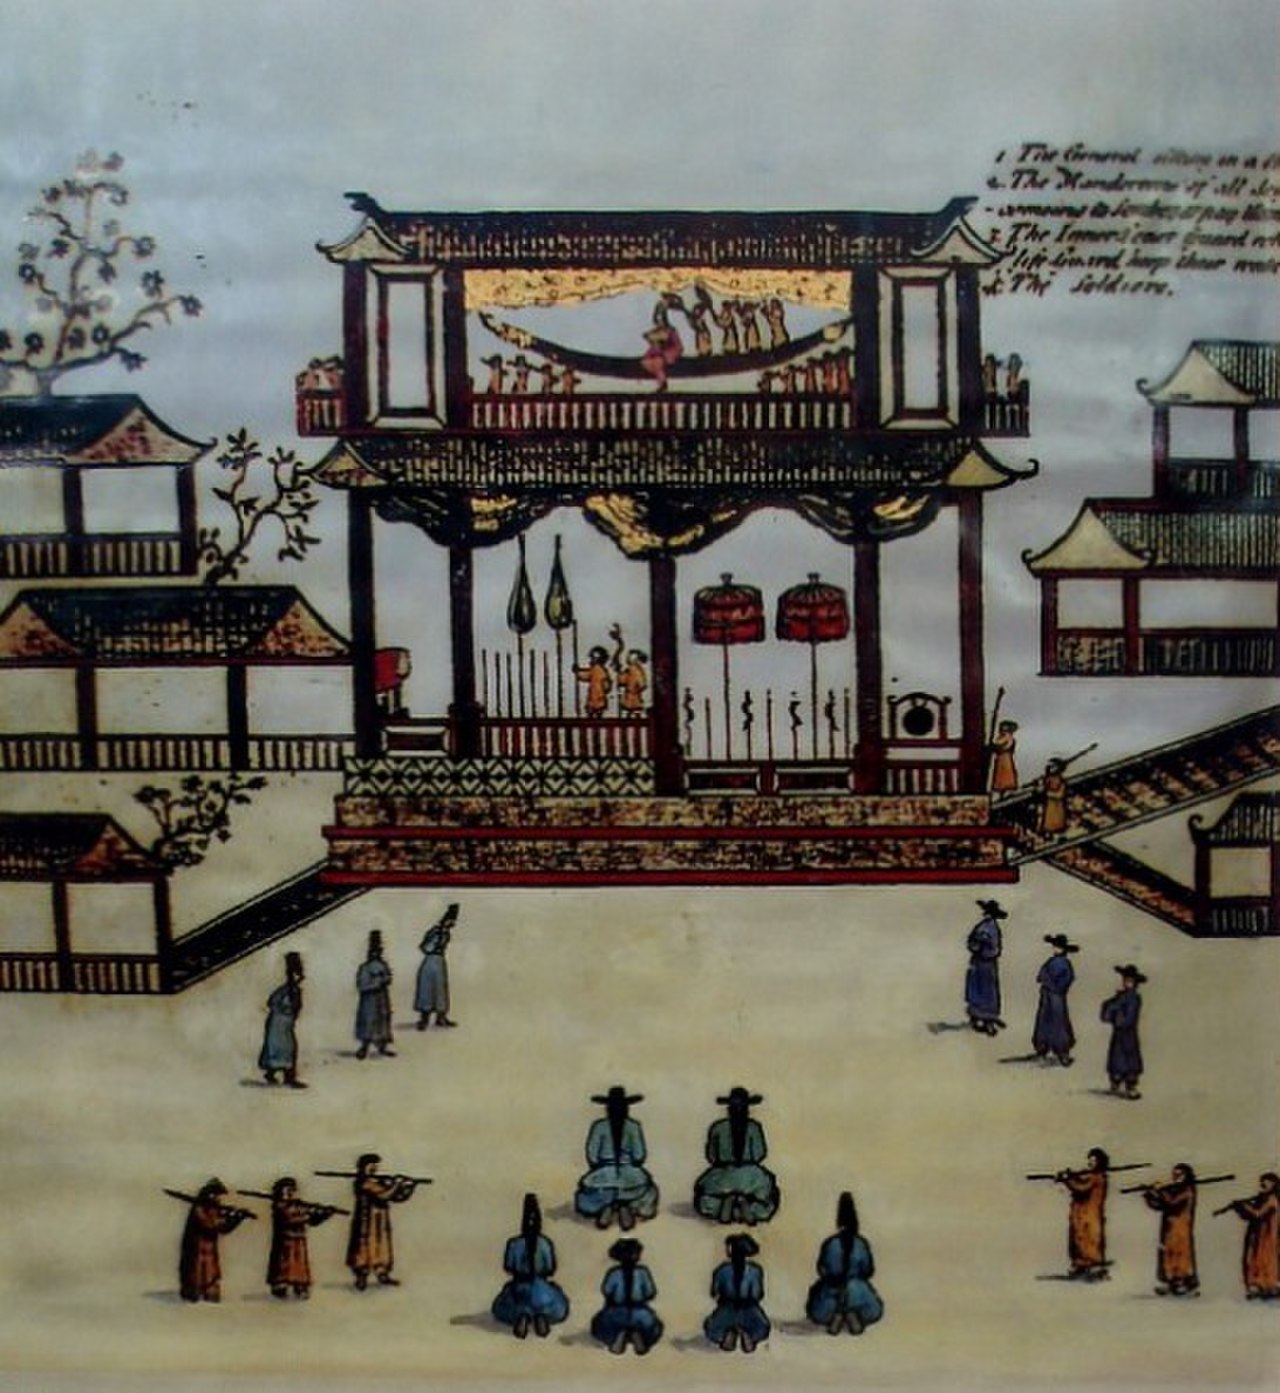 Họa phẩm mô tả Phủ chúa Trịnh do Samuel Baron vẽ vào khoảng thế kỷ XVII.